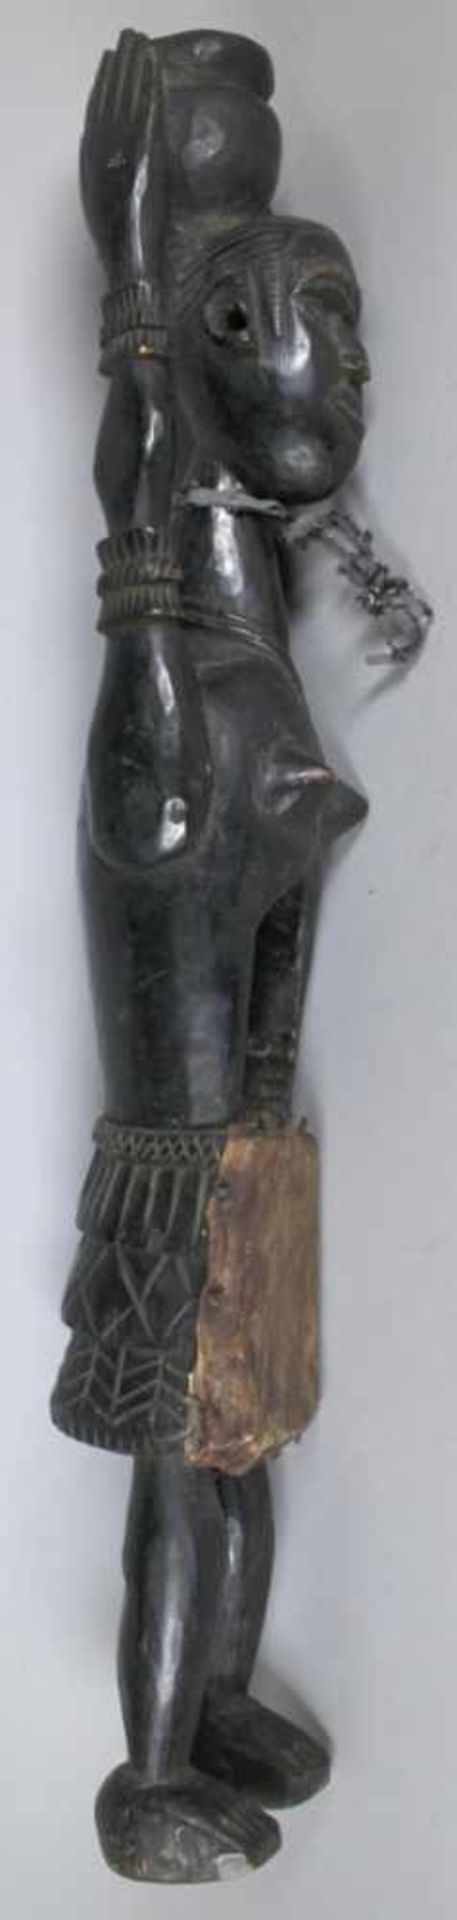 Reliquiar-Figur, Afrika, plastische, stehende, weibliche Darstellung mit Hals- undArmschmuck, auf - Bild 3 aus 3